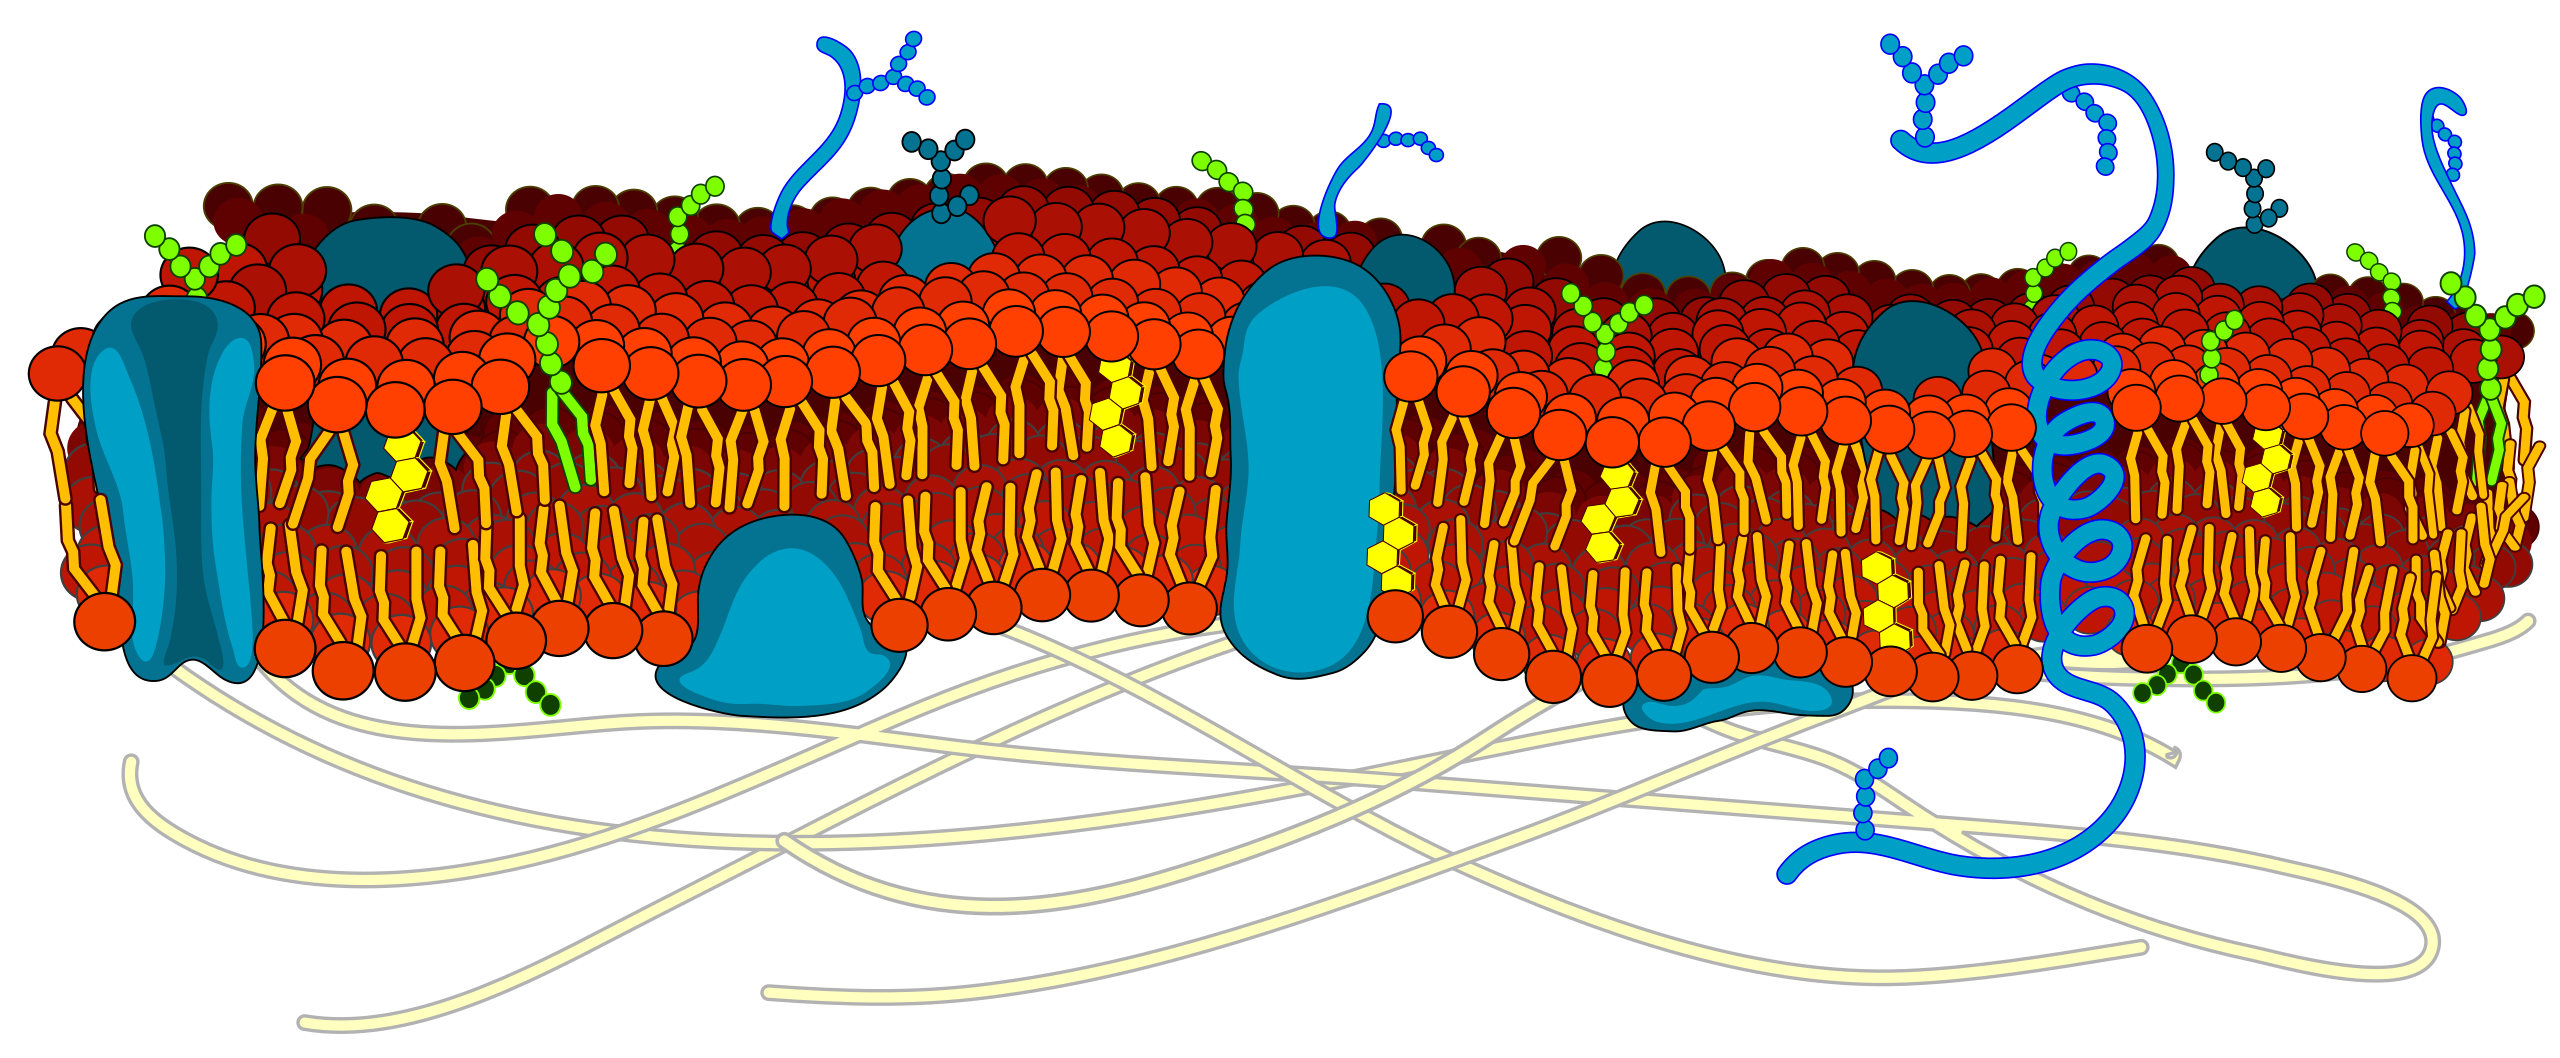 La membrana plasmática, compuesta por una bicapa de fosfolípidos, proteínas e hidratos de carbono